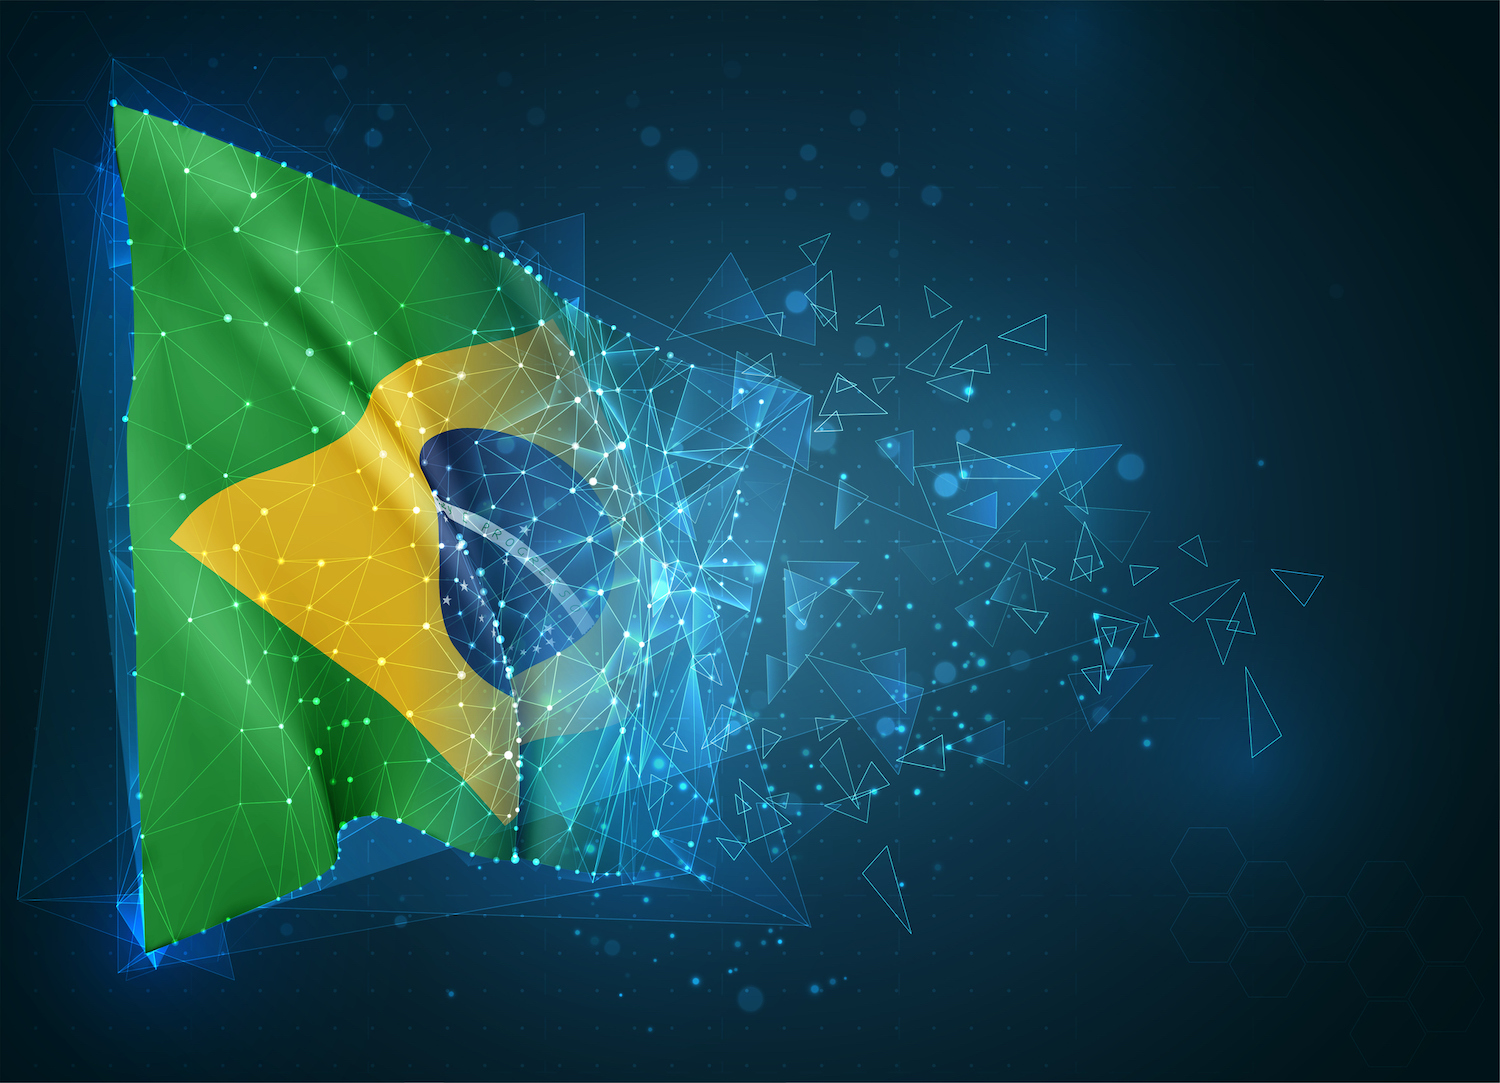 Bandeira vetorial do Brasil, objeto abstrato 3D virtual feito de polígonos triangulares sobre fundo azul